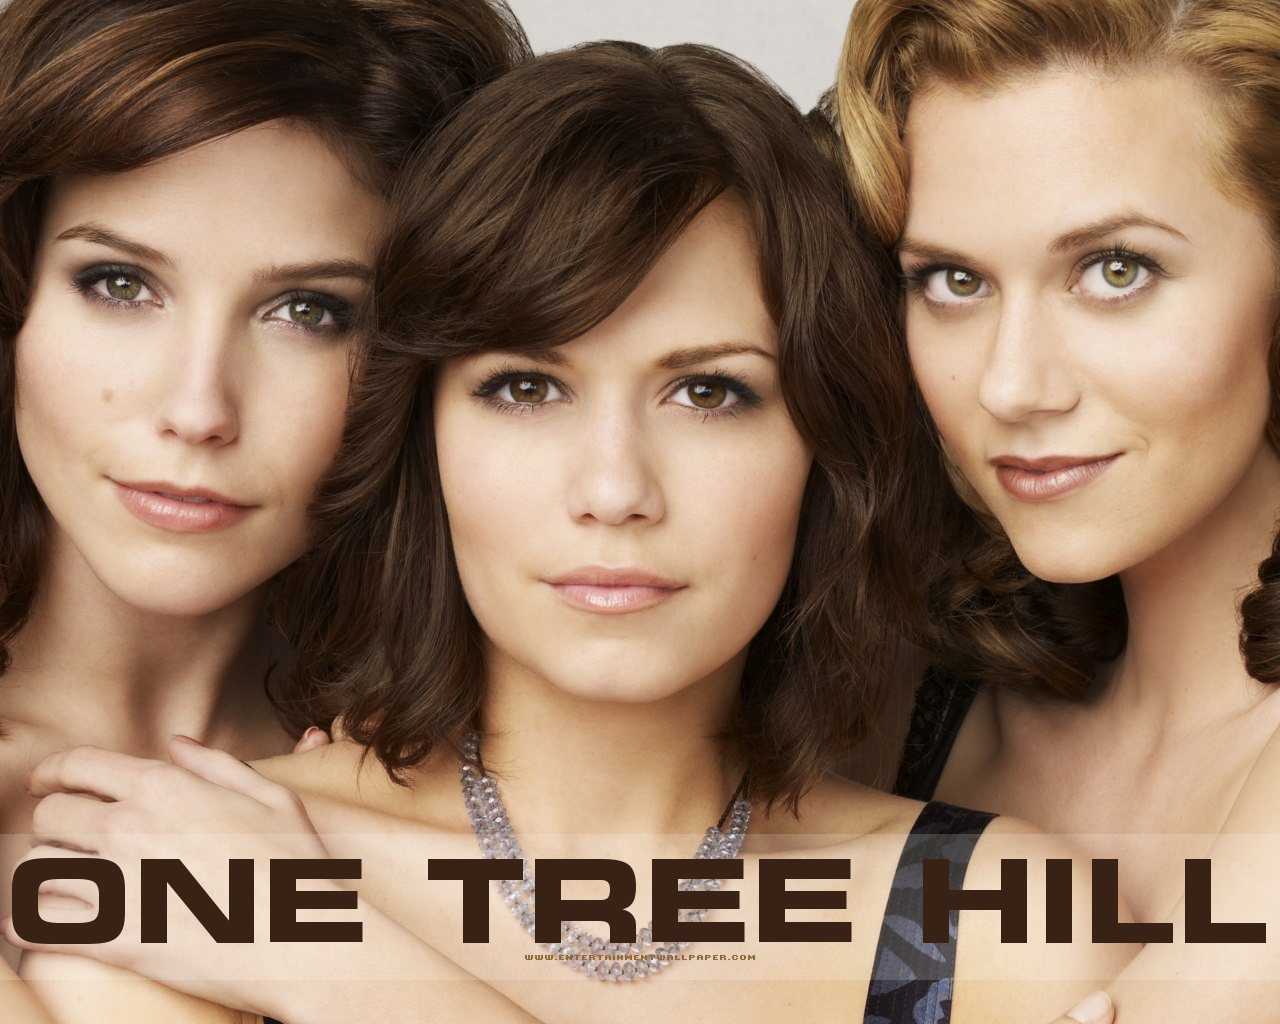 One Tree Hill Girls - One Tree Hill Wallpaper (791333) - Fanpop